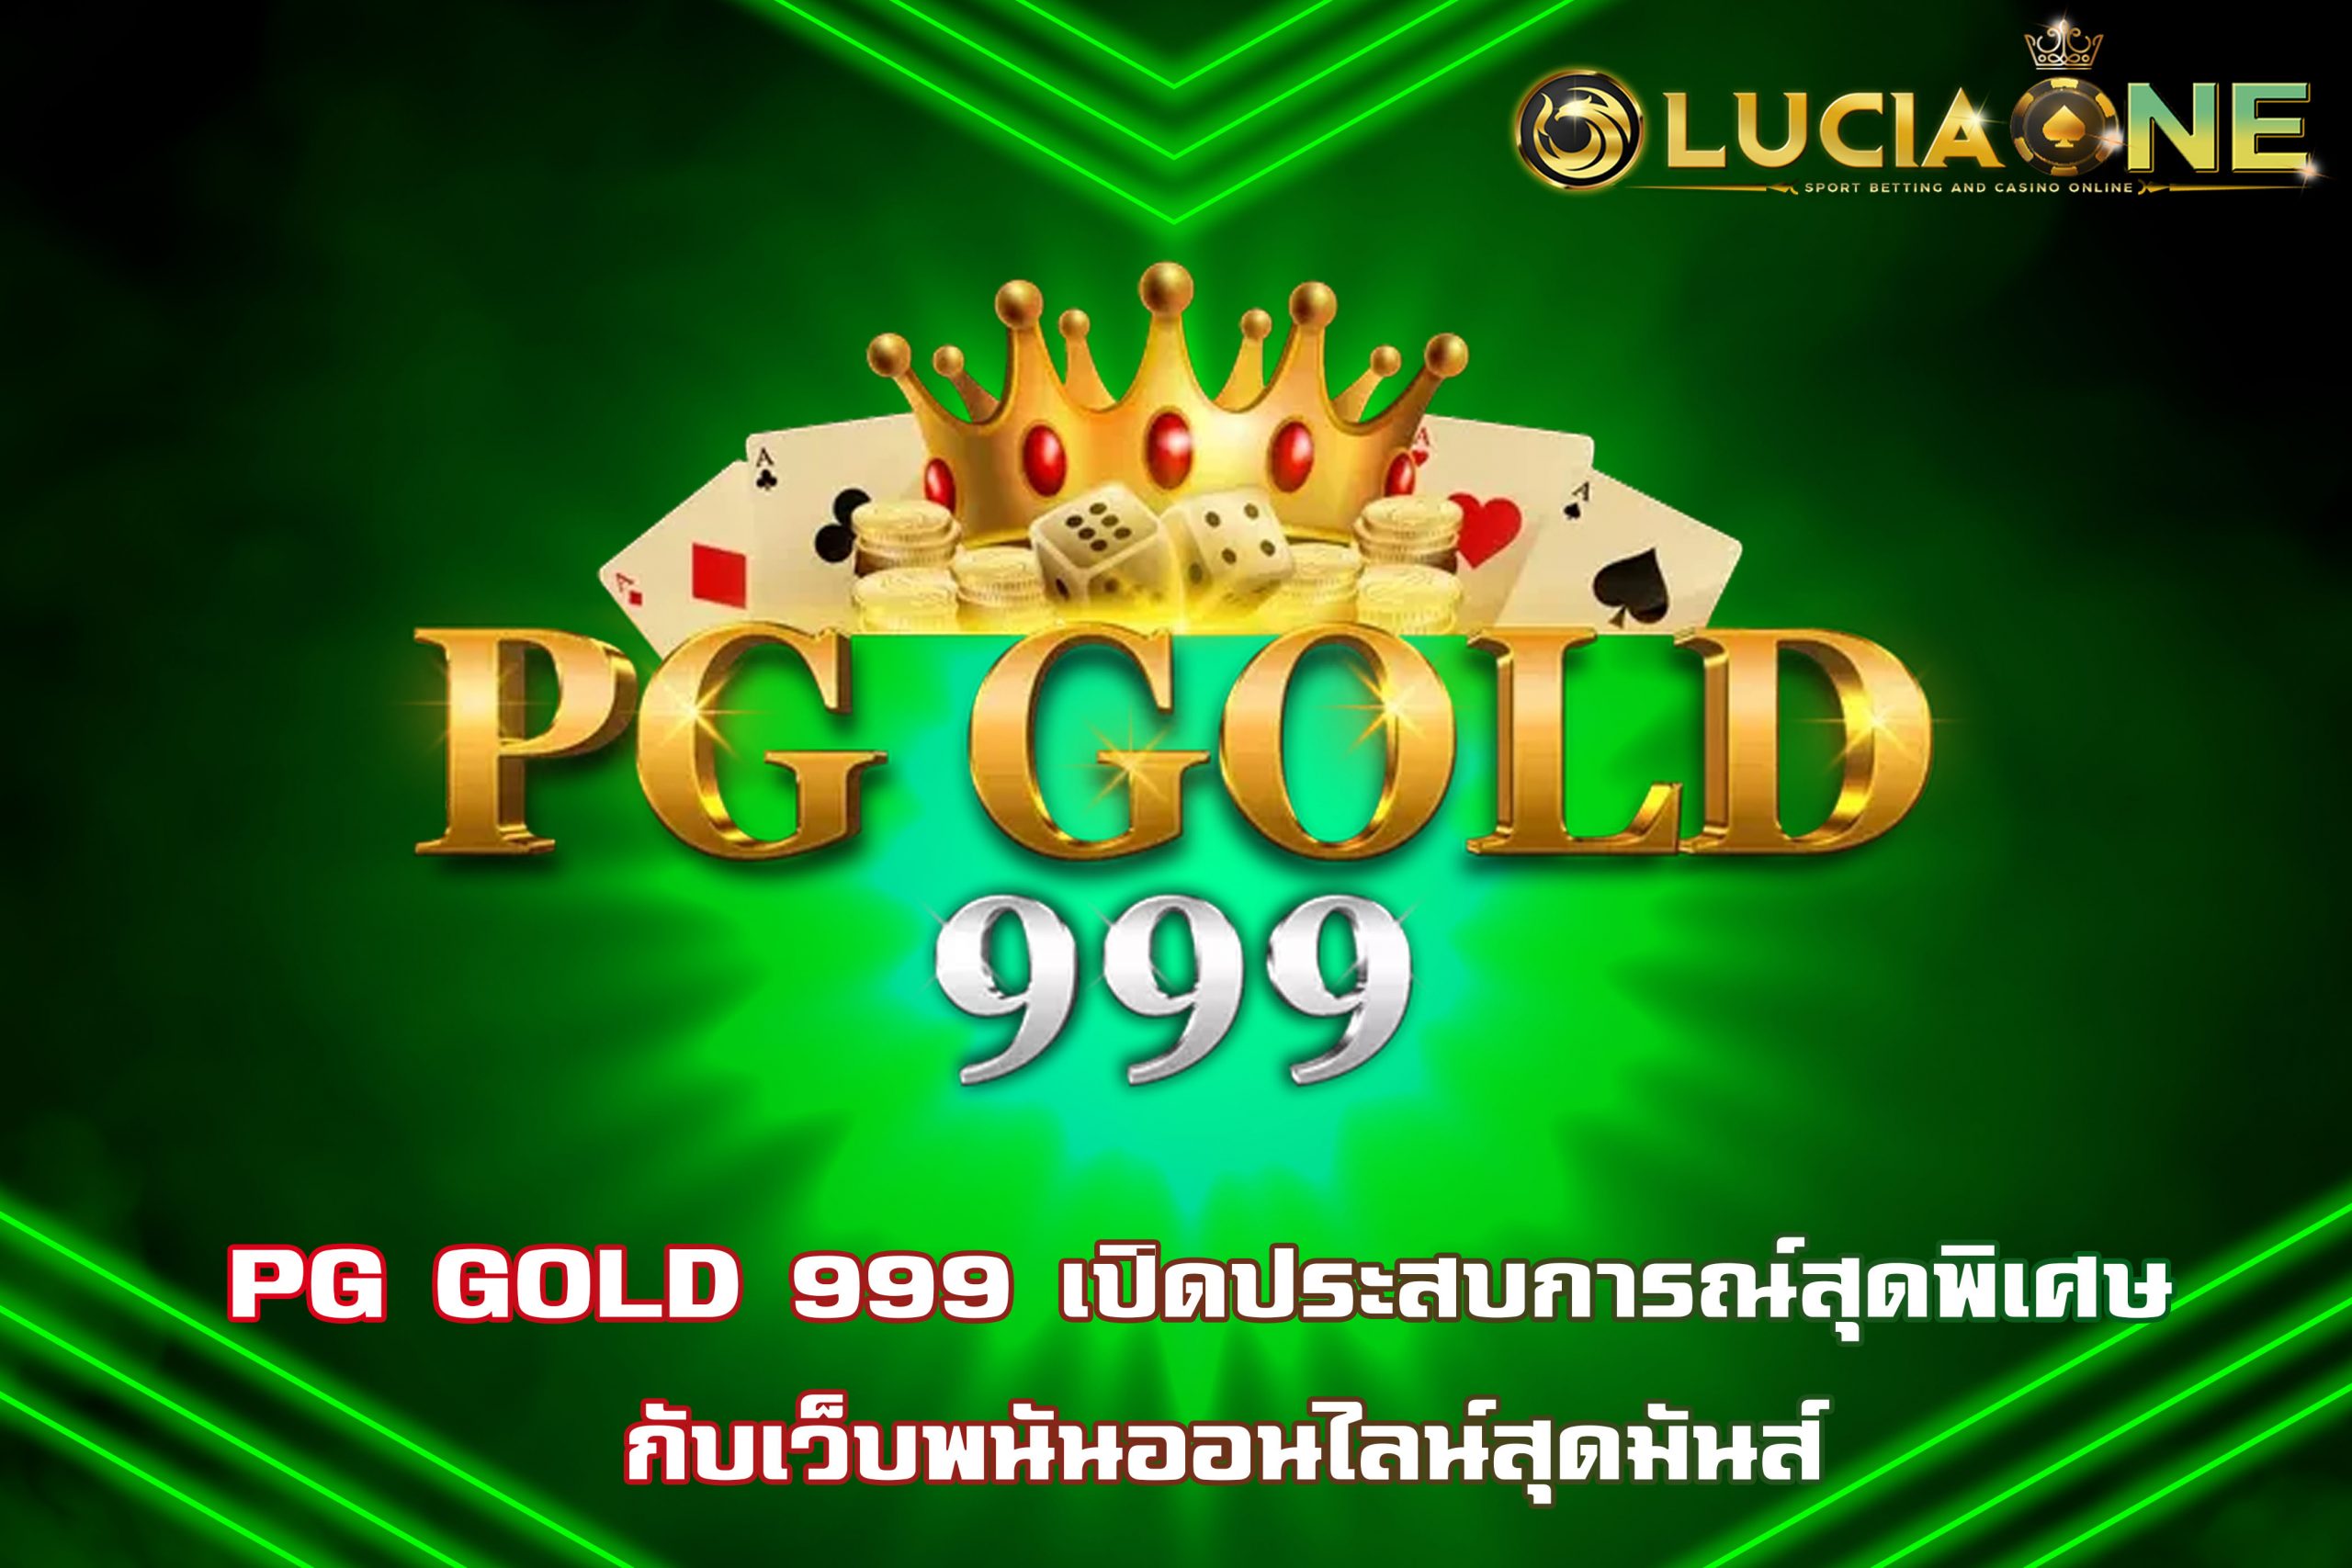 PG GOLD 999